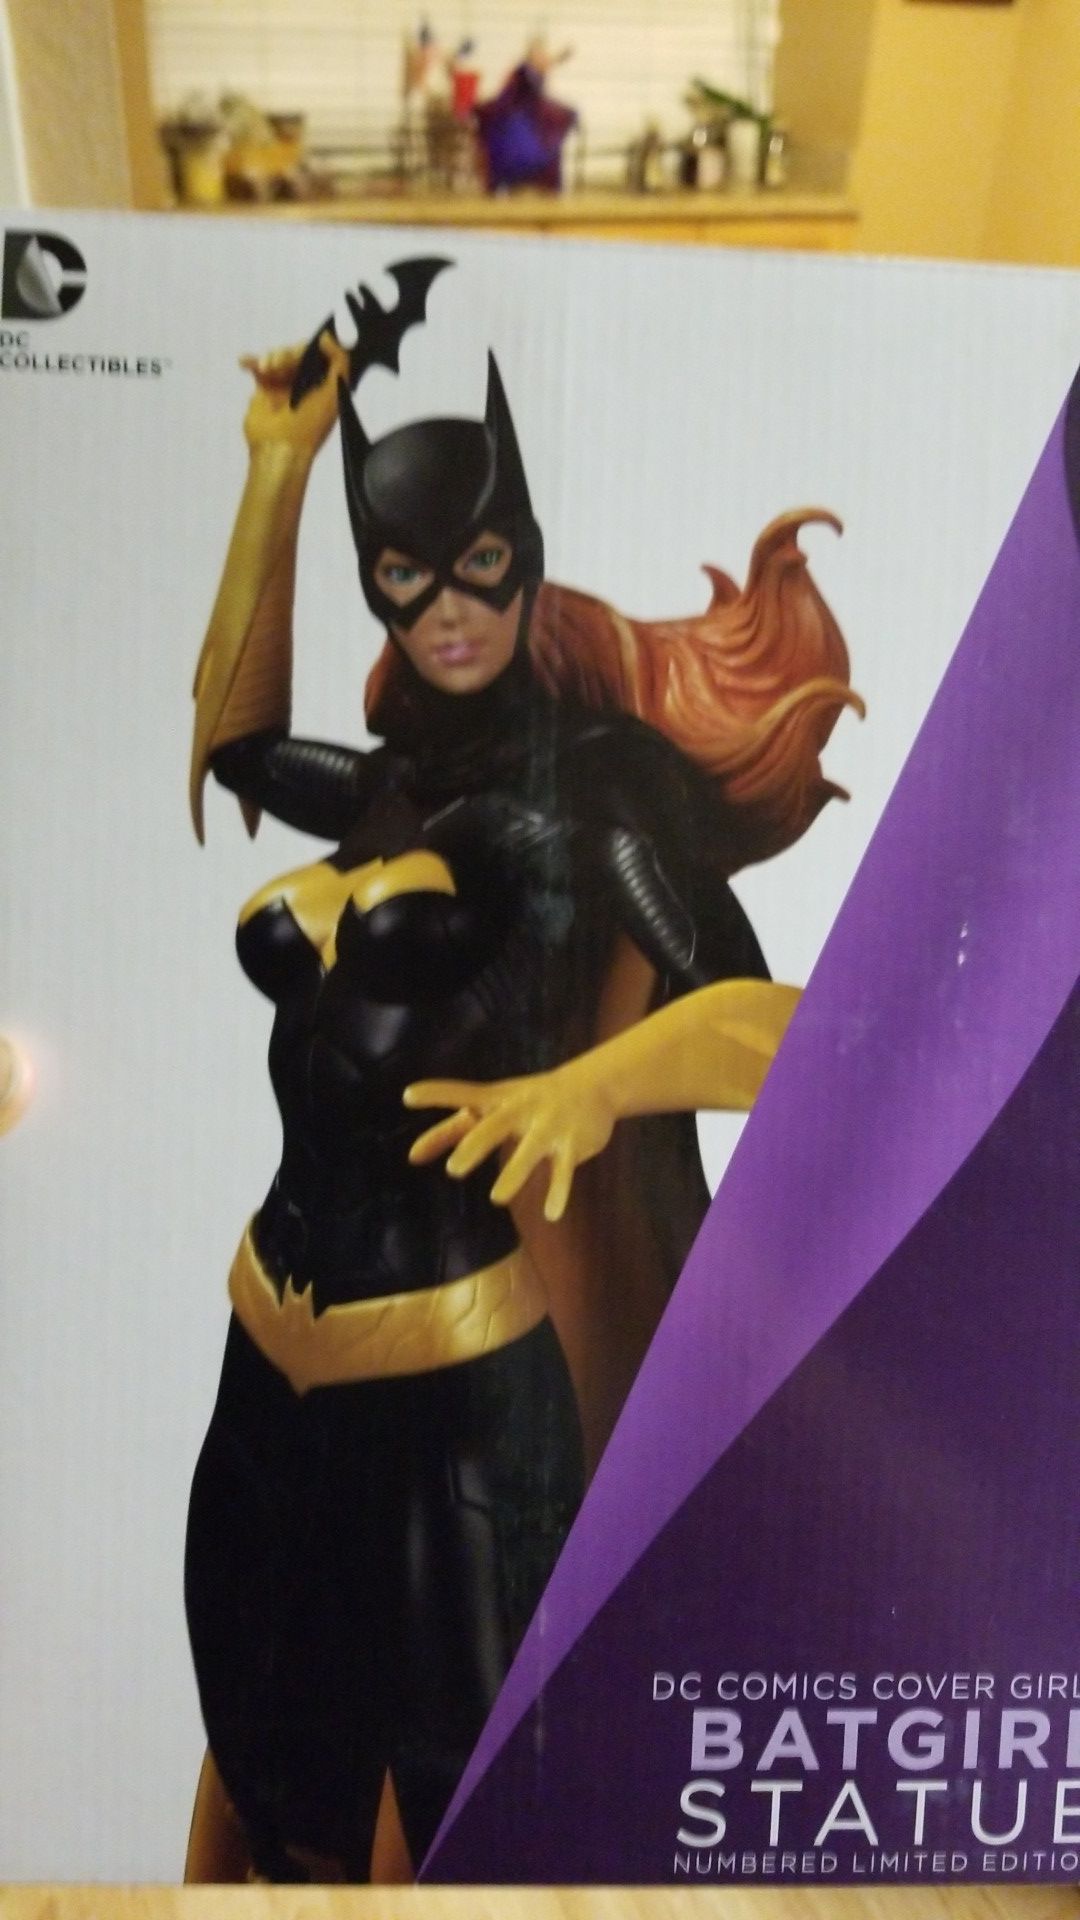 New DC Comics cover girl Batman statue